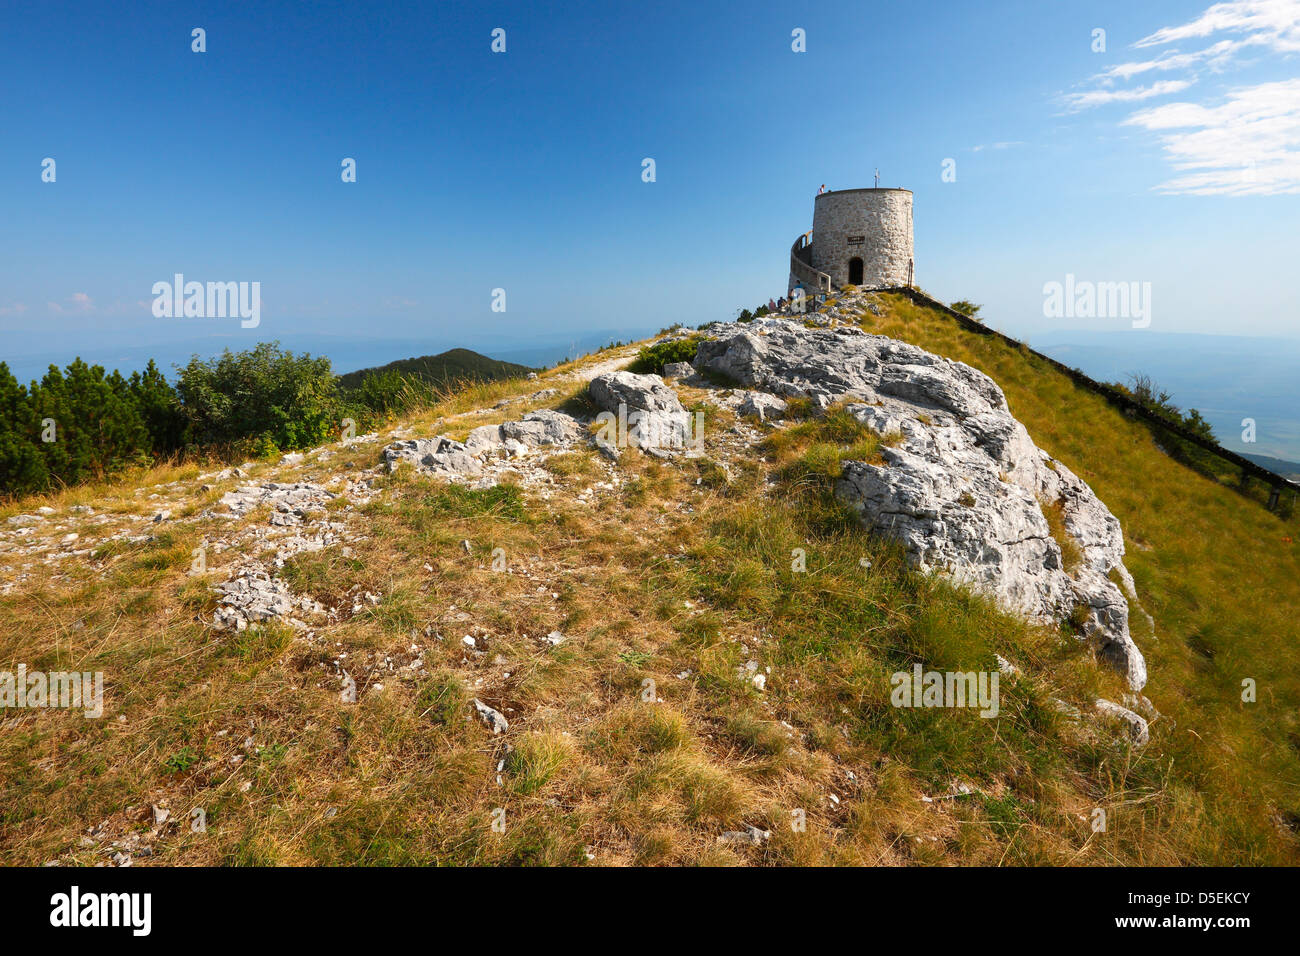 Peak of the mountain Ucka (Učka) Stock Photo